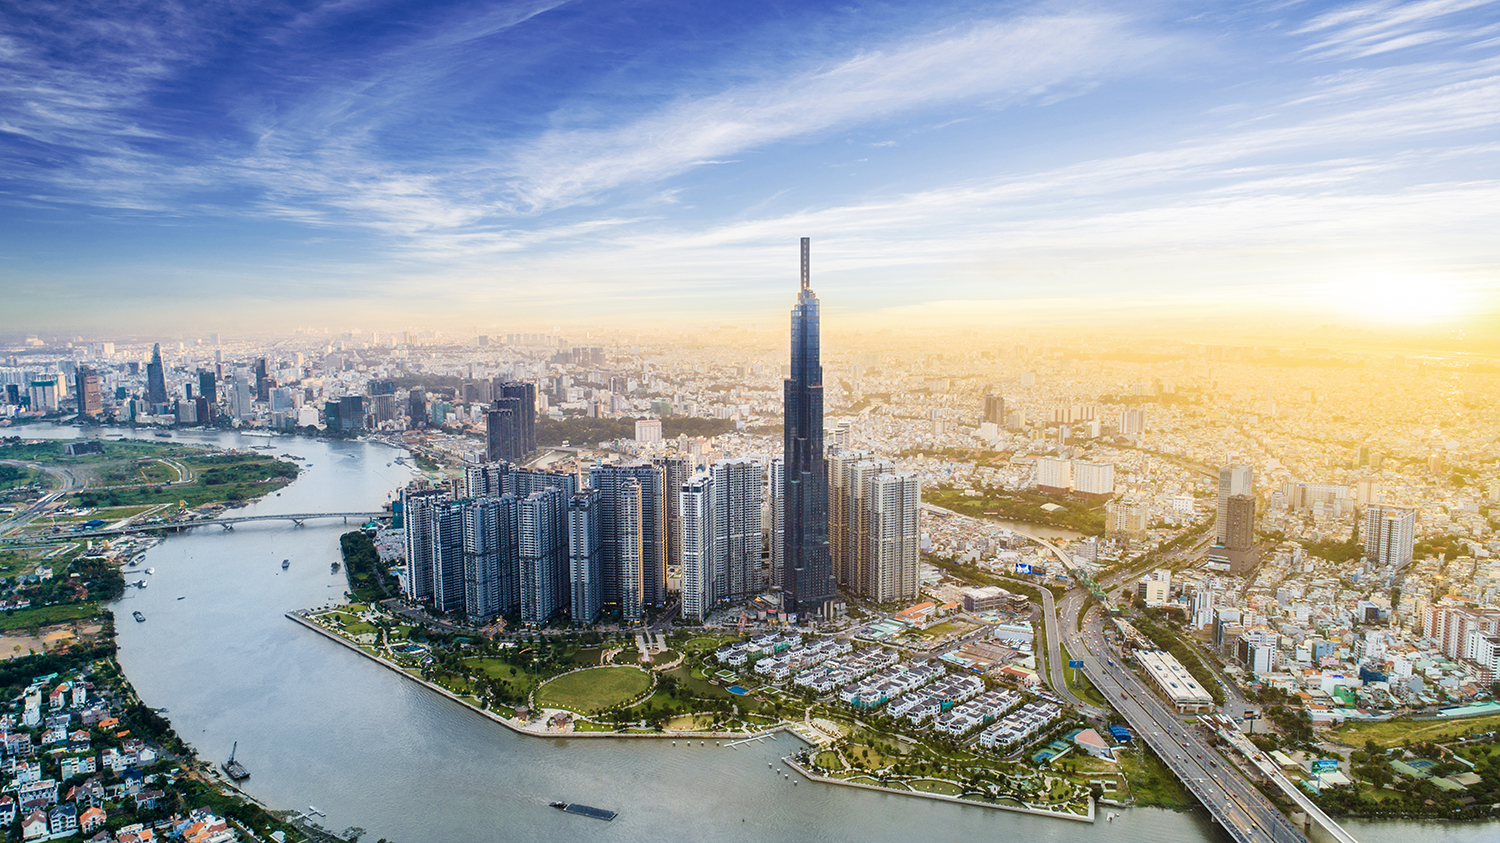 Chinh phục tòa nhà cao nhất Đông Nam Á với Giải chạy cầu thang bộ Vinpearl Luxury Landmark 81